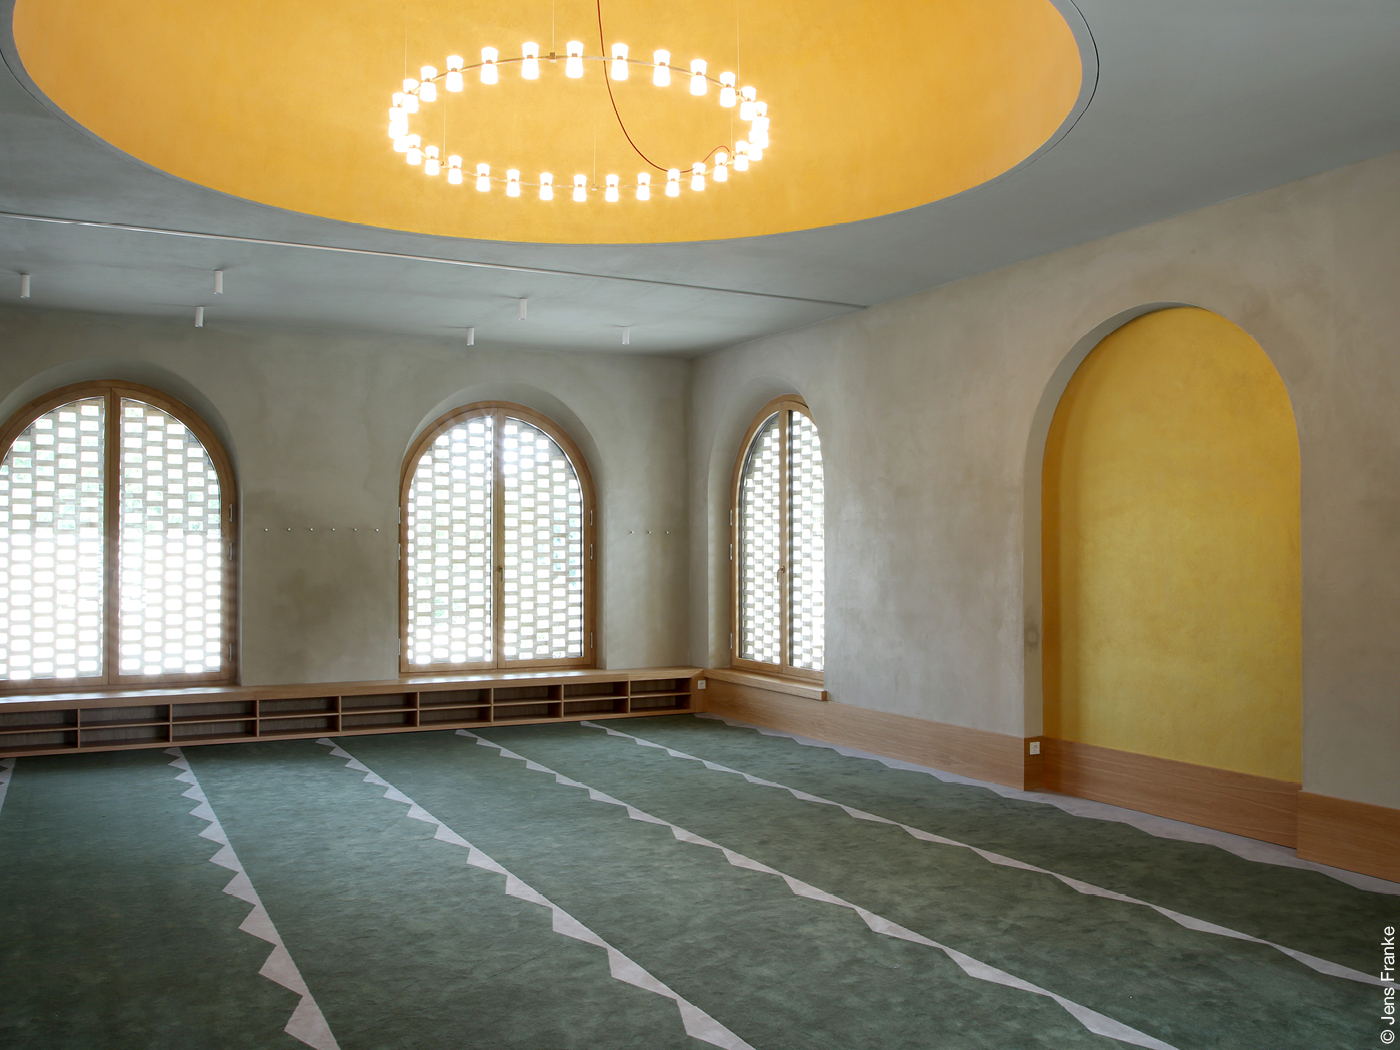 Innenraum vom muslimischen Wasch- und Gebetshaus mit teppichboden und Rundbogenfenstern